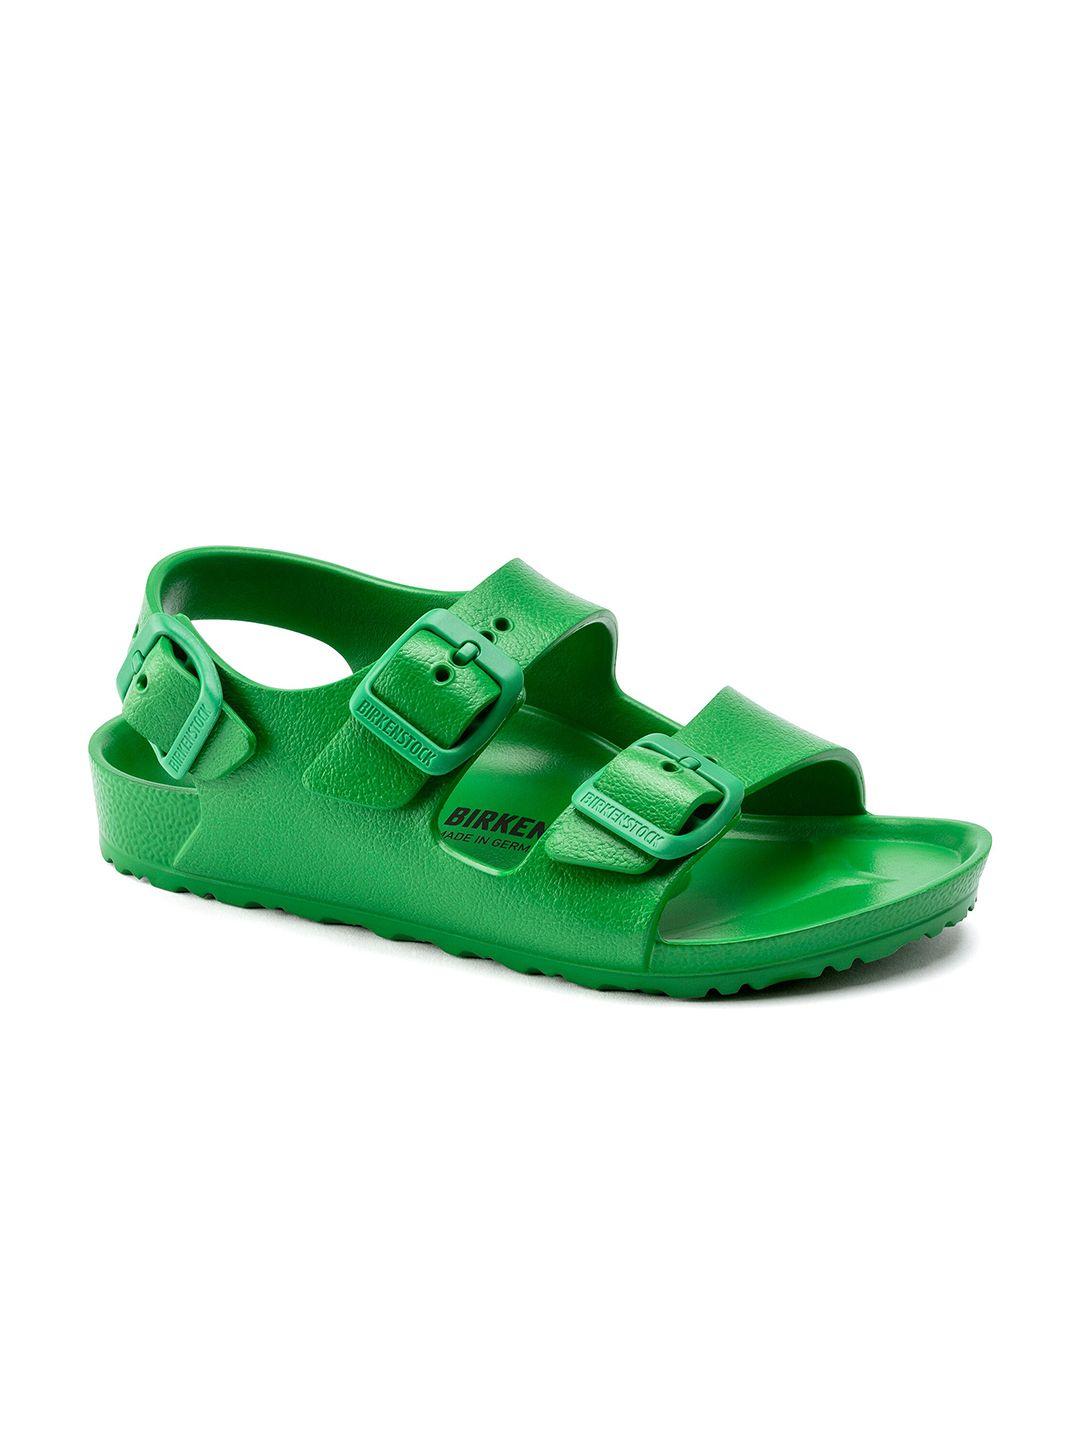 birkenstock boys green narrow width milano comfort beach sandals